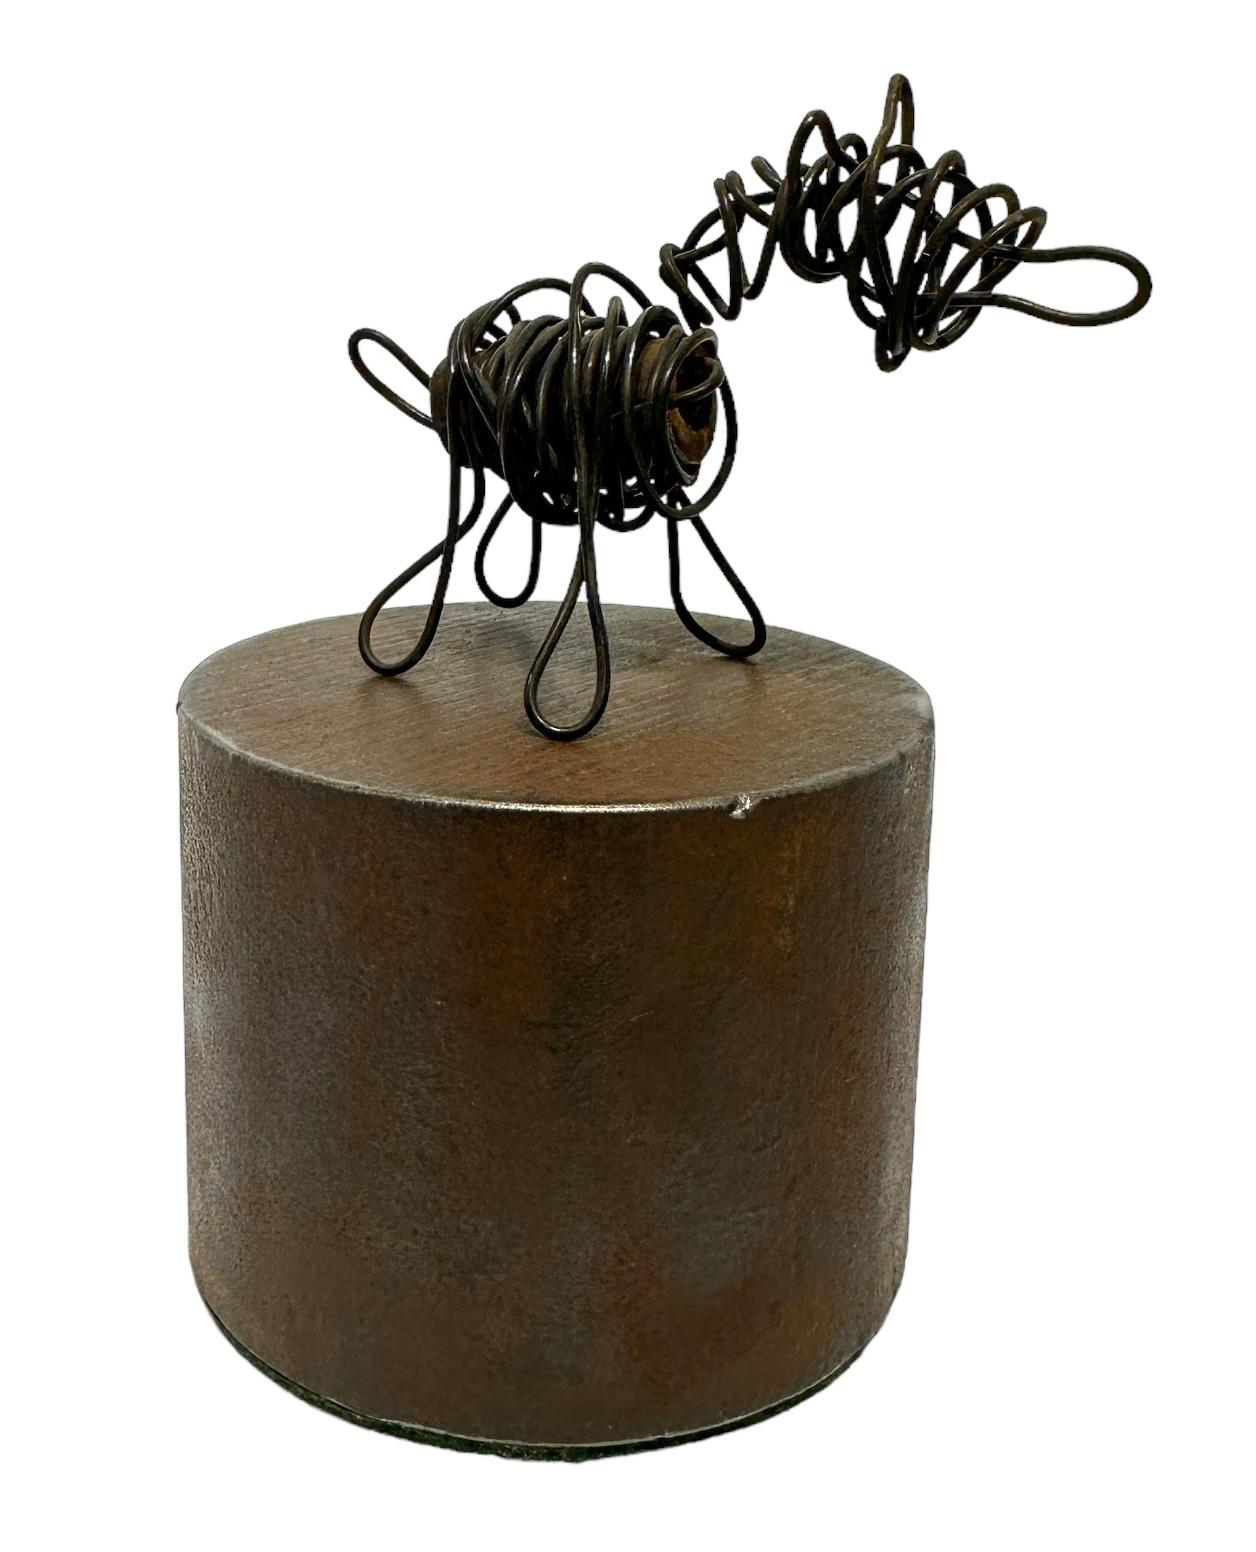 dog wire sculpture